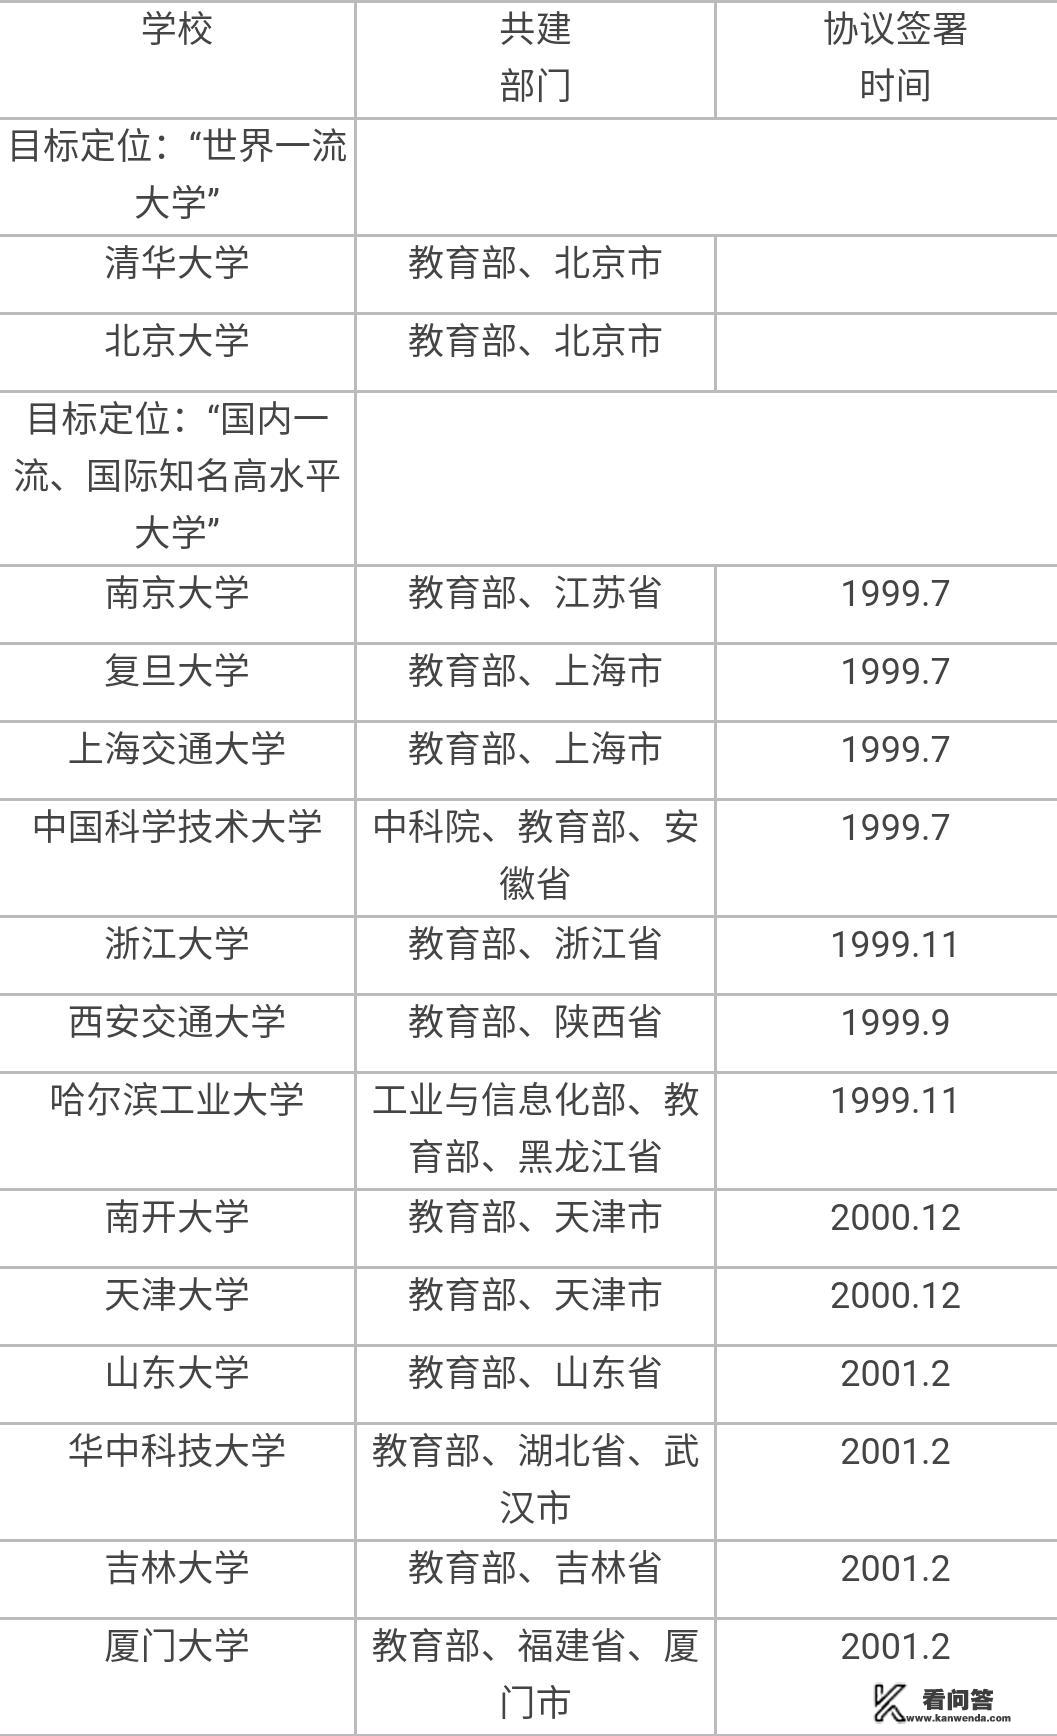 中国有多少所大学